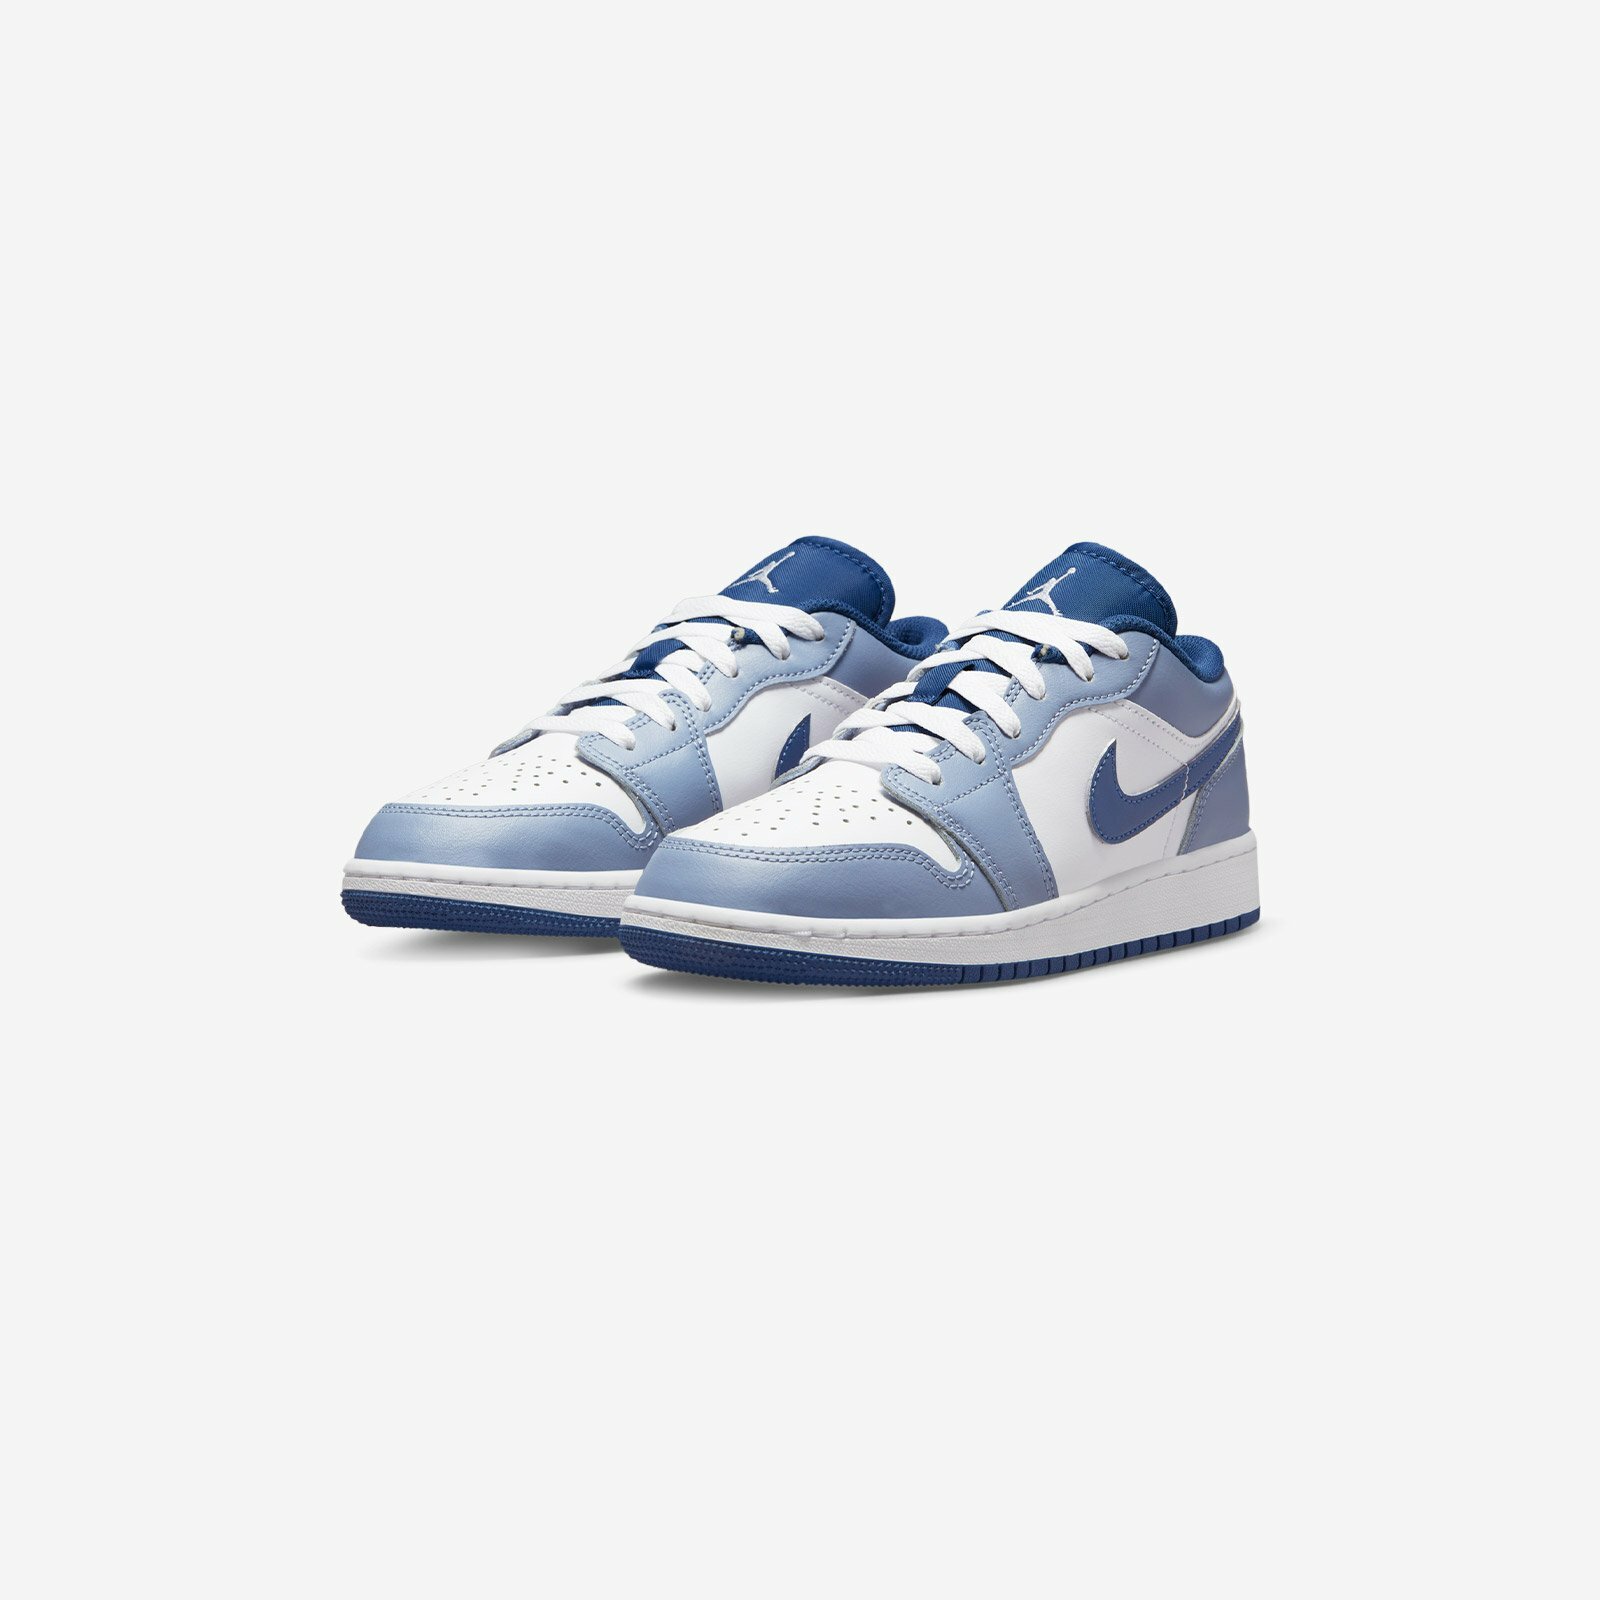 Nike Air Jordan 1 low '' steel blue '' GS 大童限定藍梅優格莫藍迪